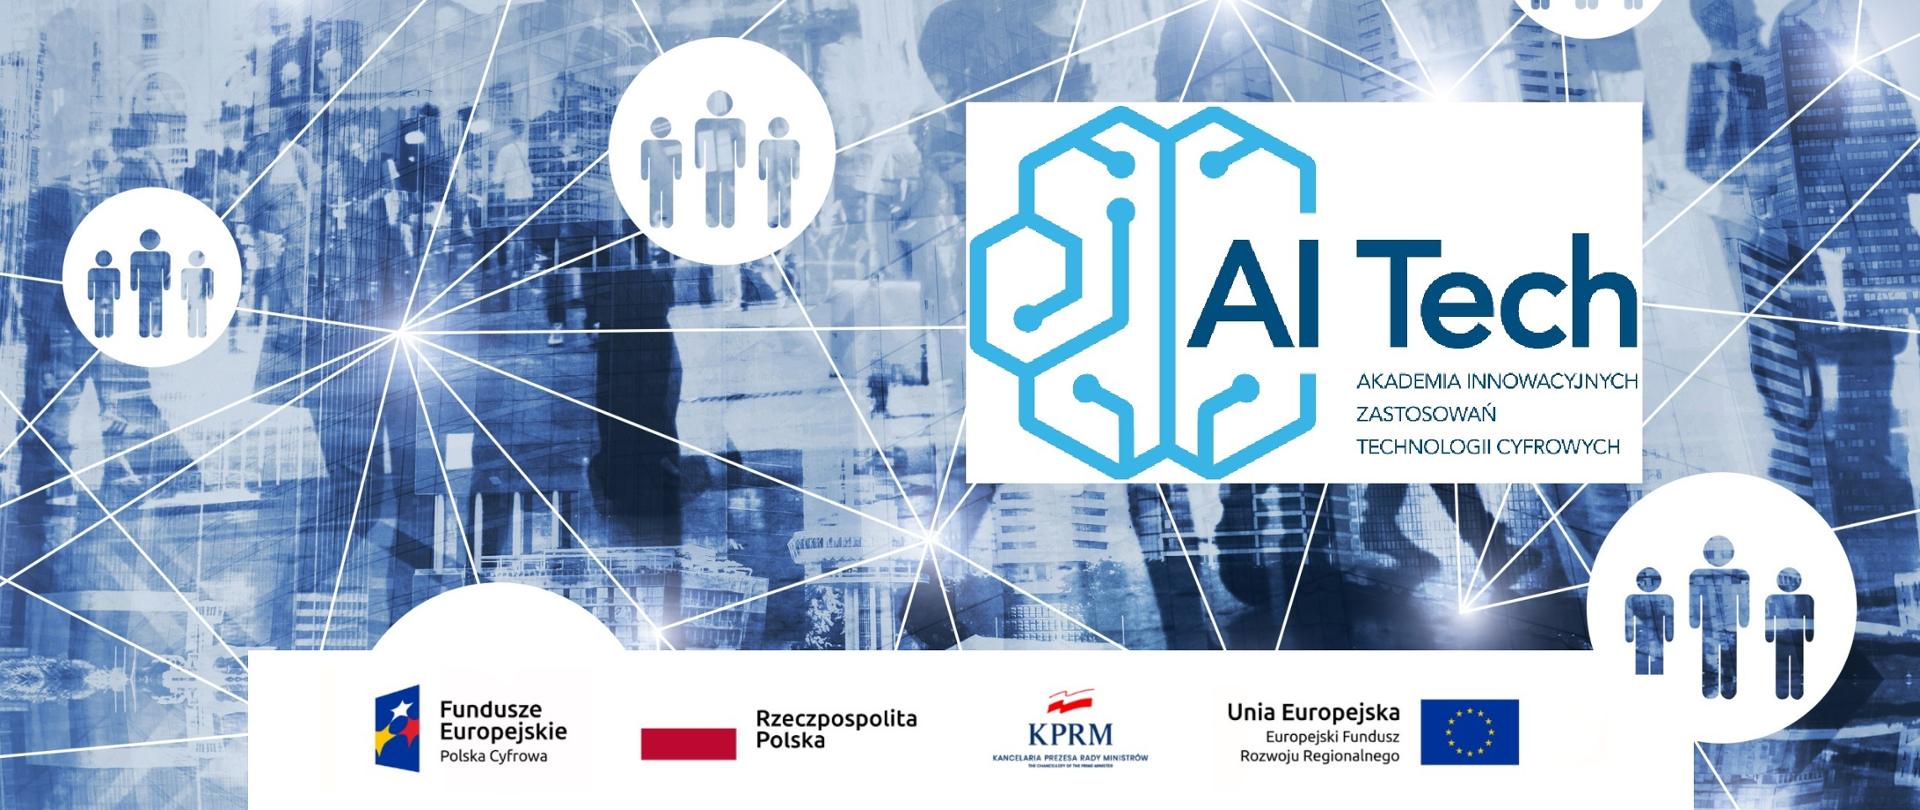 Na zdjęciu w tle w barwach niebieskich obraz panoramy dużego miasta, na pierwszy planie lici połączeń symbolizujących wymianę informacji, w centralnej części logo AI Tech, u dołu baner finansowania Projektu z Funduszy Europejskich. 